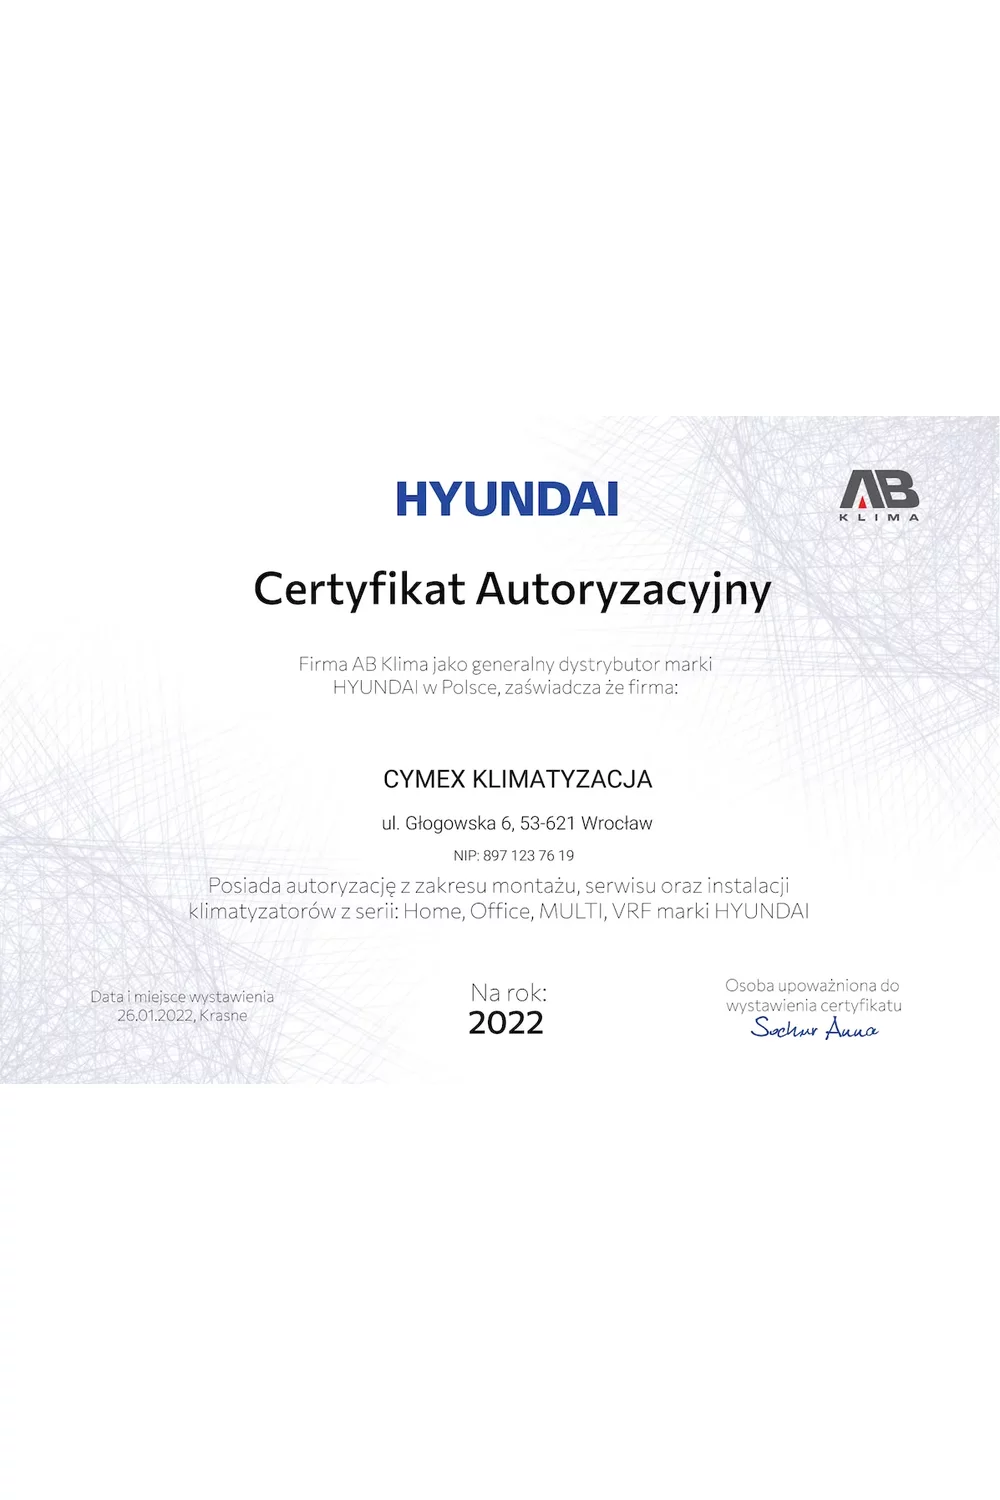 Certyfikat Autoryzacyjny HYUNDAI 2022 - zdjęcie